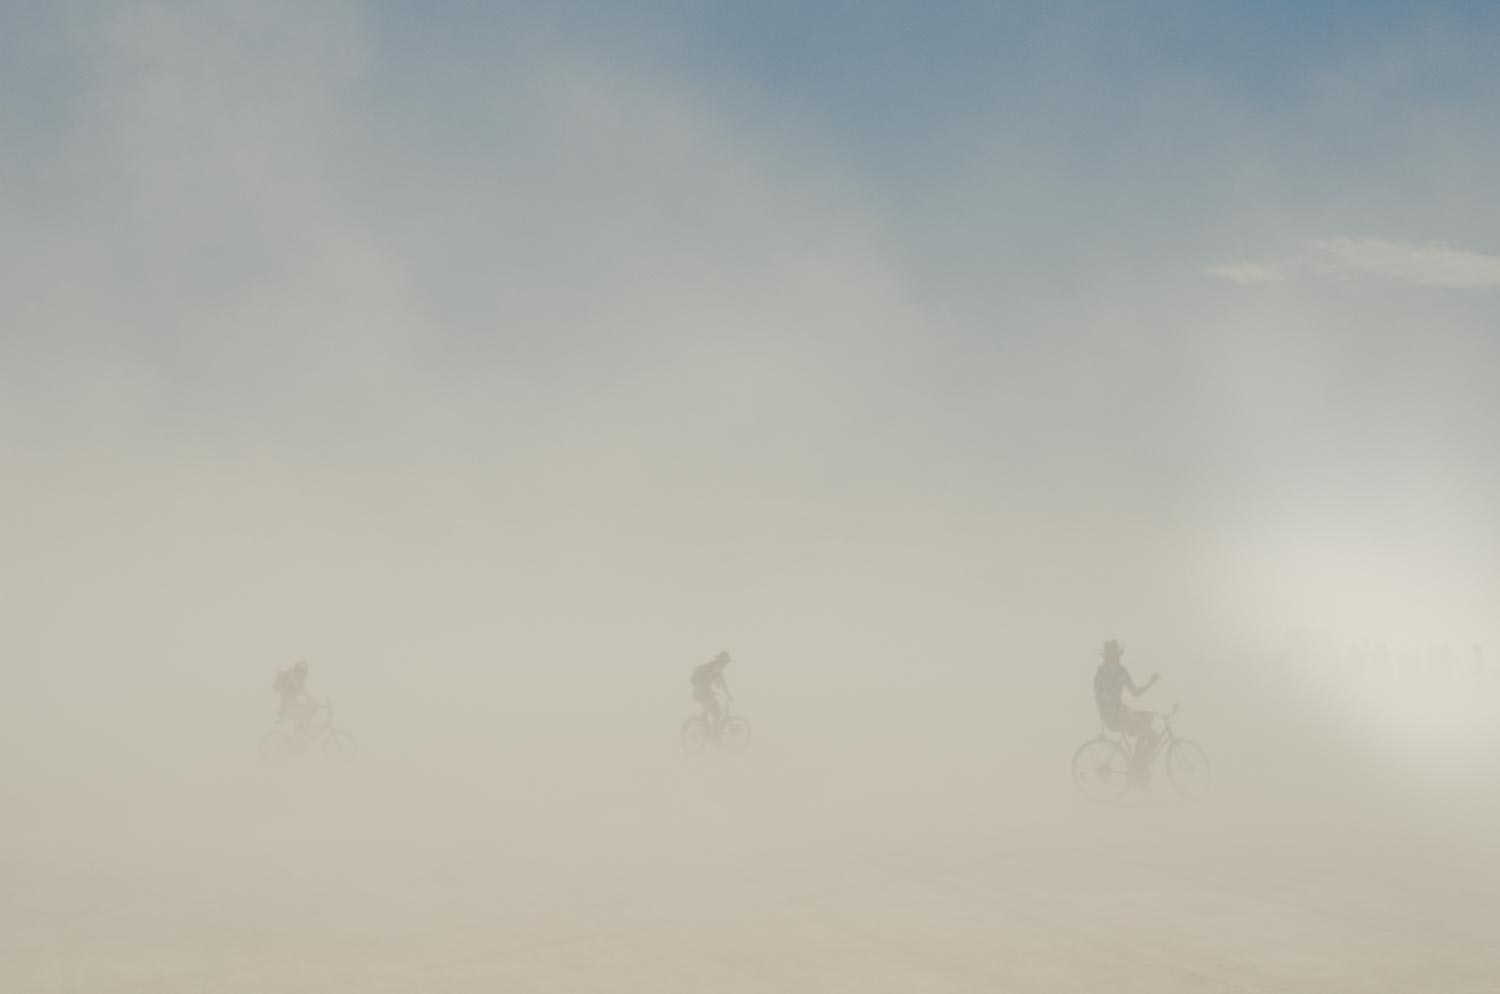 Burning Man 2016 